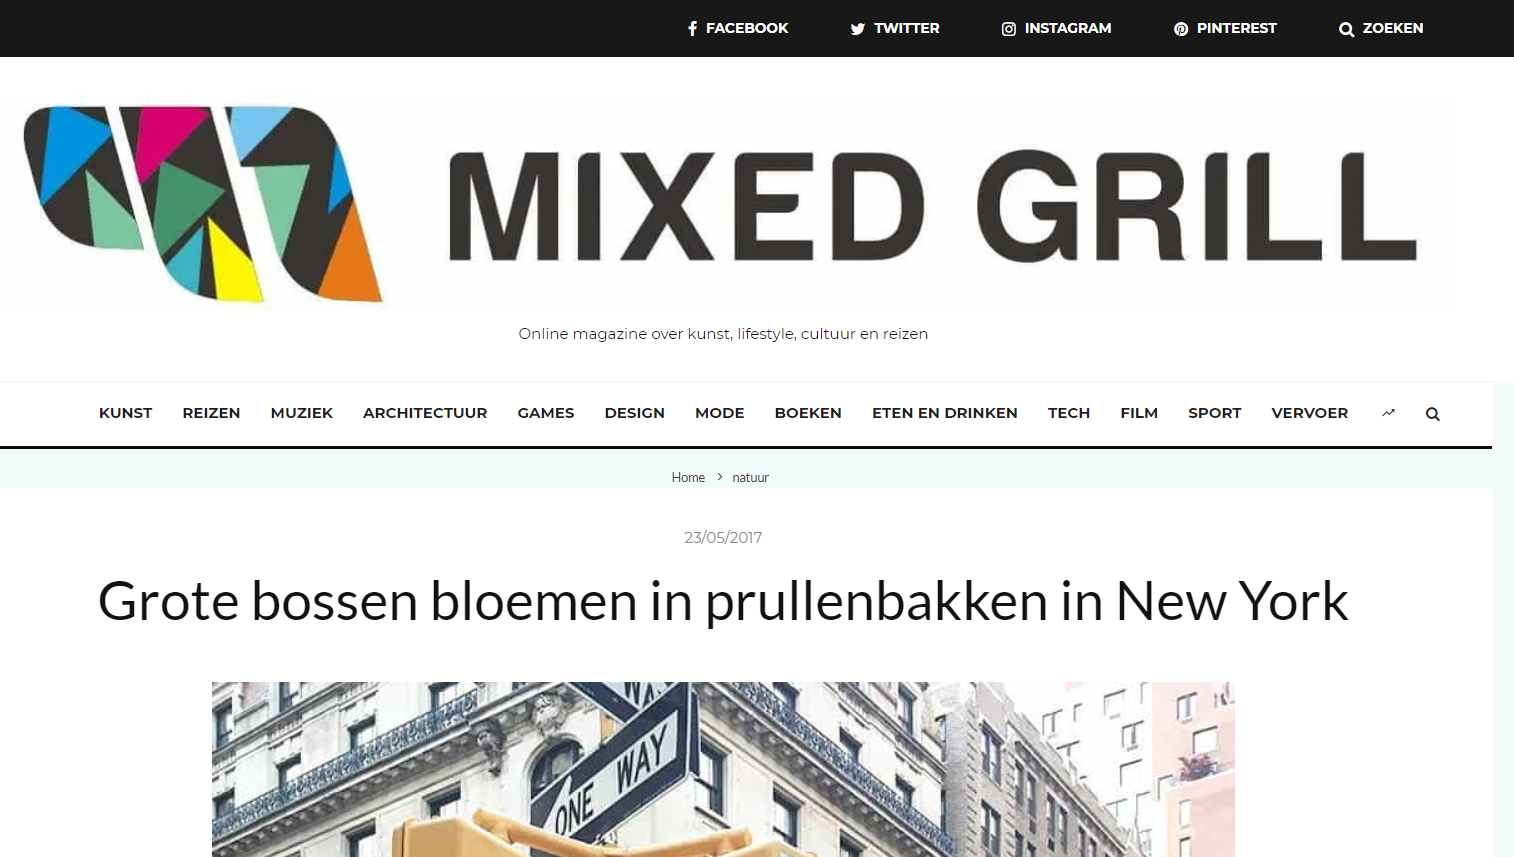 mixedgrill.nl bossen bloemen in prullenbakken